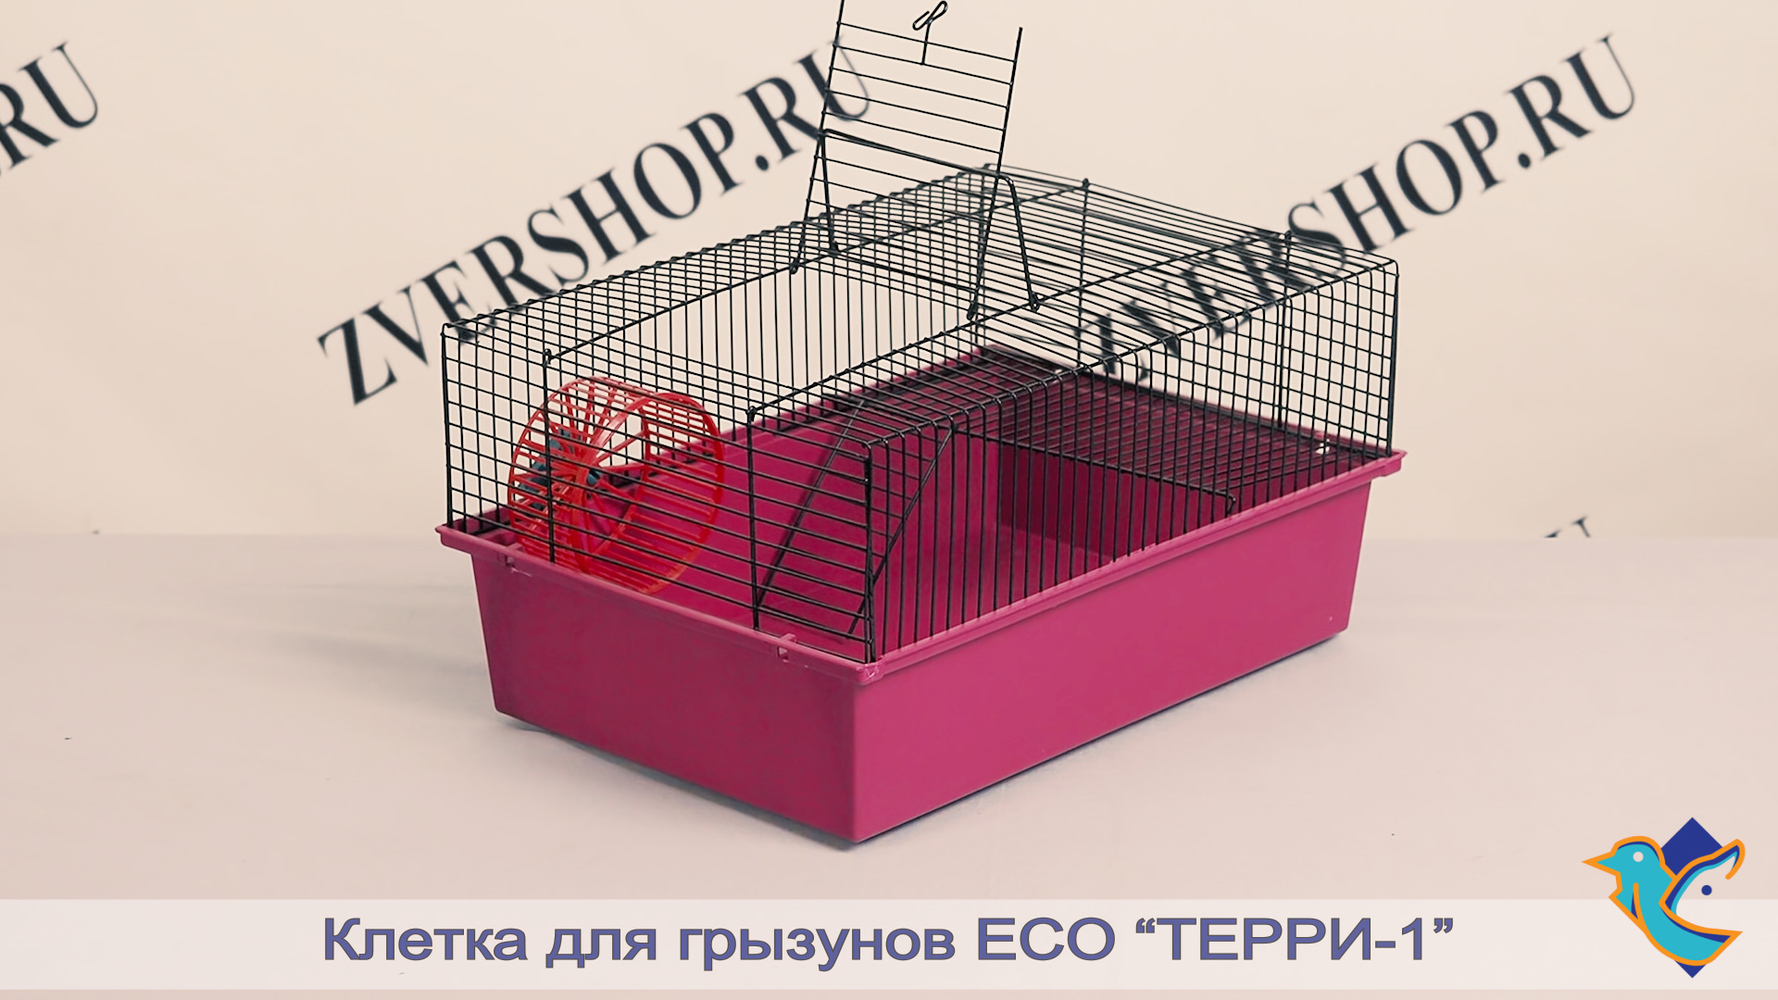 Фото Клетка Есо RP4010 разборная, для грызунов с этажом "Терри - 1" 37*26*18 см